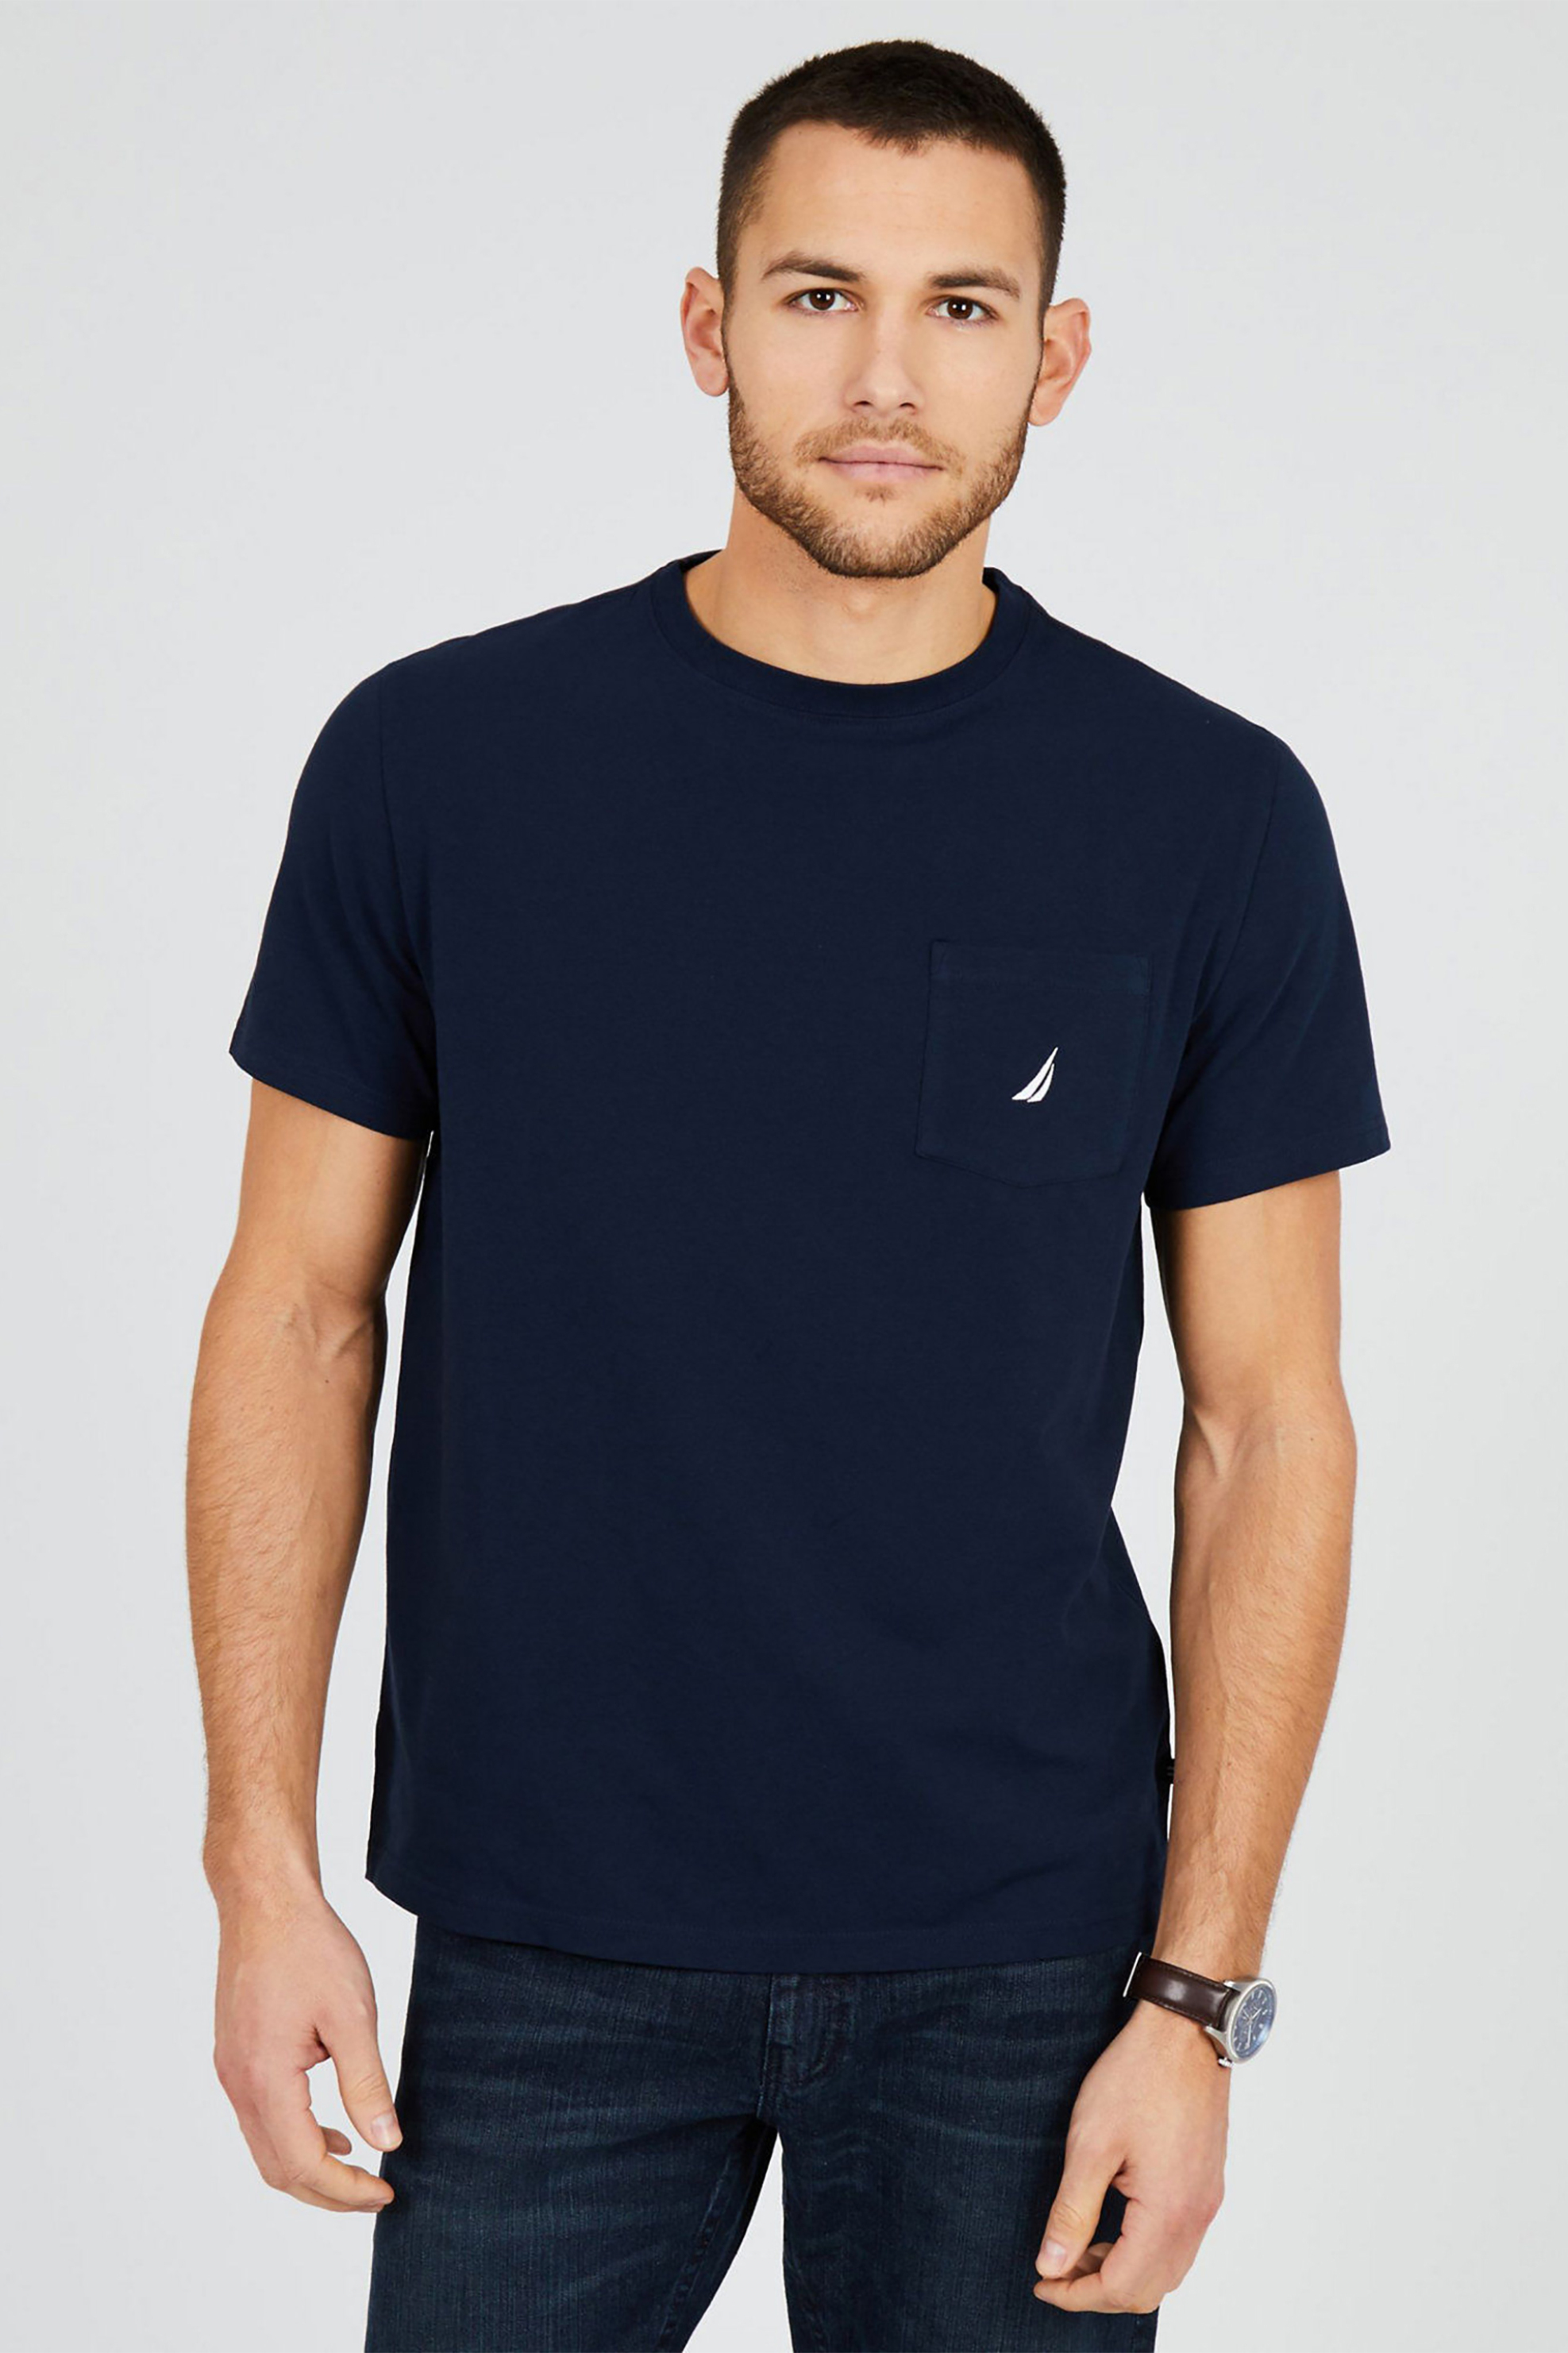 Ανδρική Μόδα > Ανδρικά Ρούχα > Ανδρικές Μπλούζες > Ανδρικά T-Shirts Nautica ανδρικό T-shirt μονόχρωμο με τσέπη - V41050 Μπλε Σκούρο